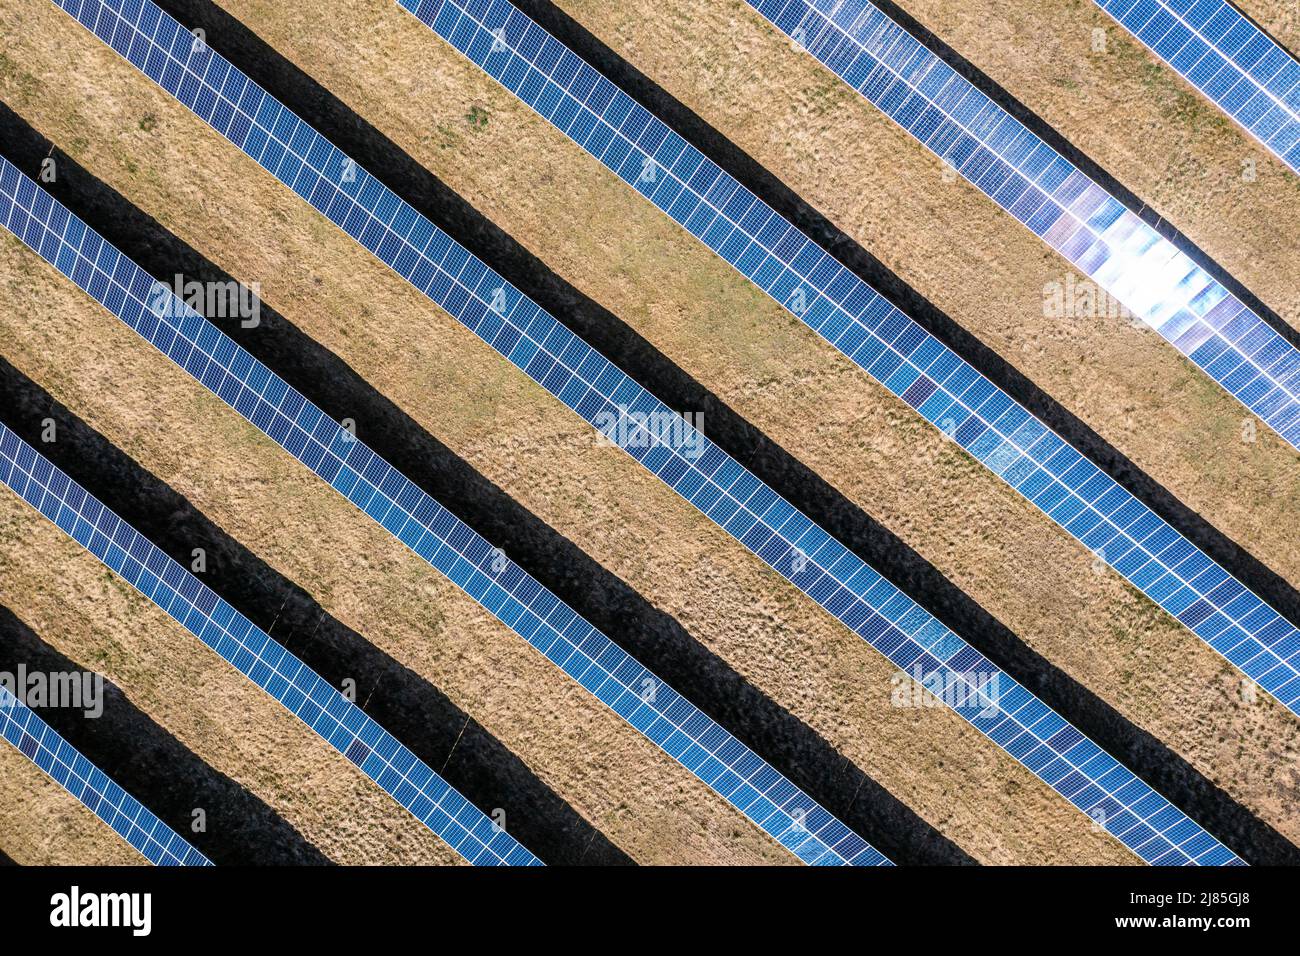 Vista aérea de la granja solar, filas de paneles fotovoltaicos por una pequeña casa Foto de stock